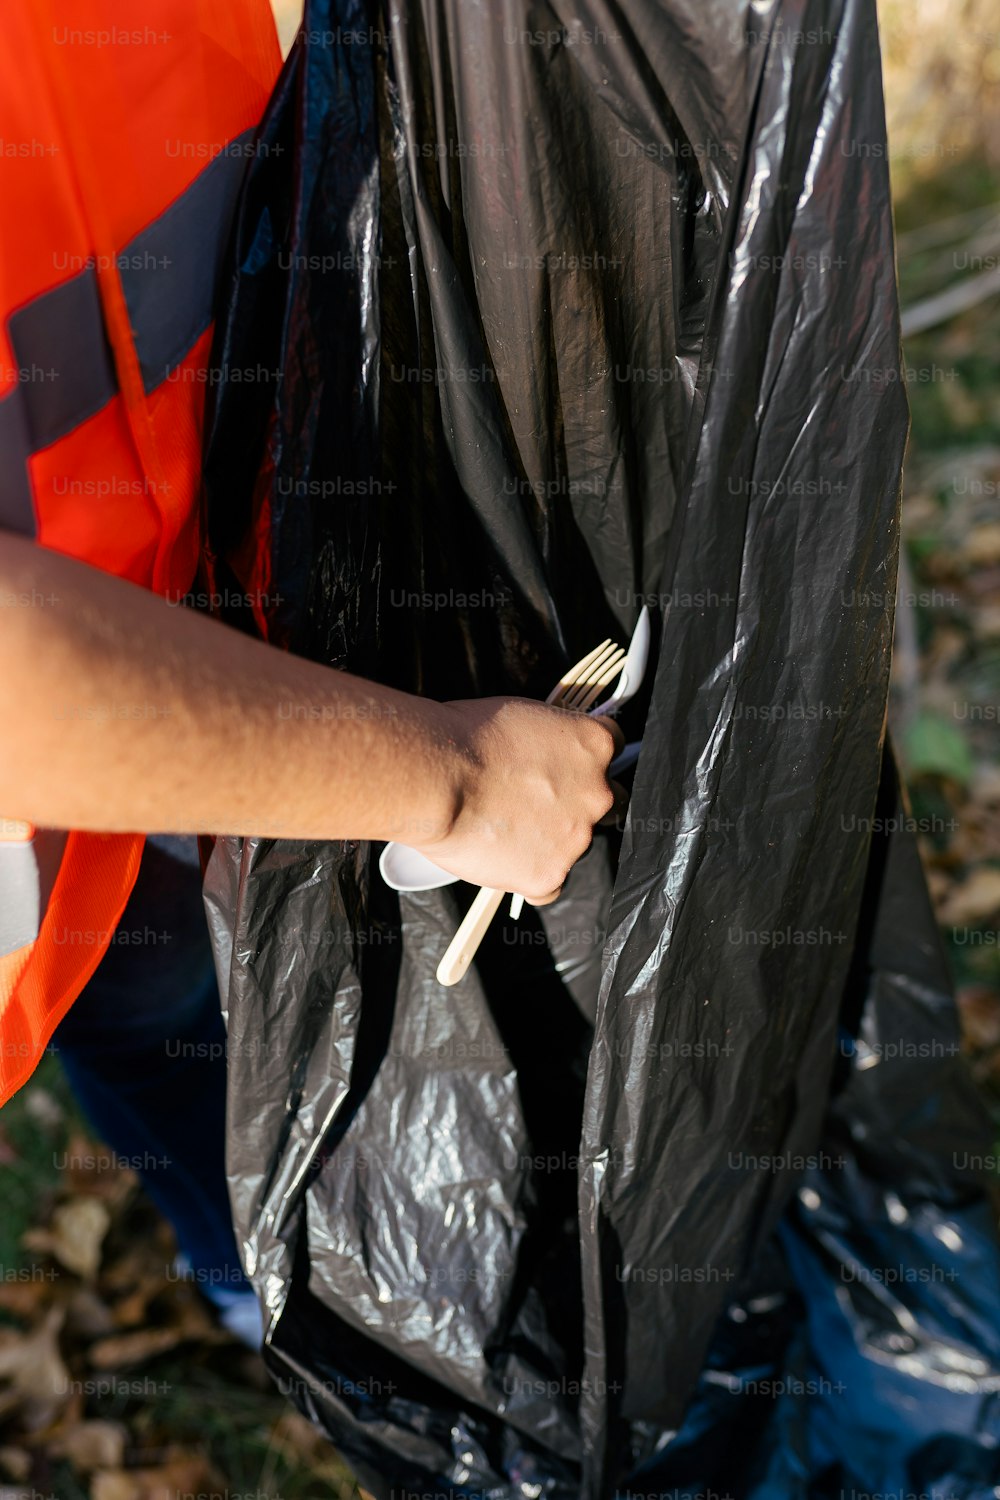 uma pessoa em um colete laranja segurando um saco plástico preto